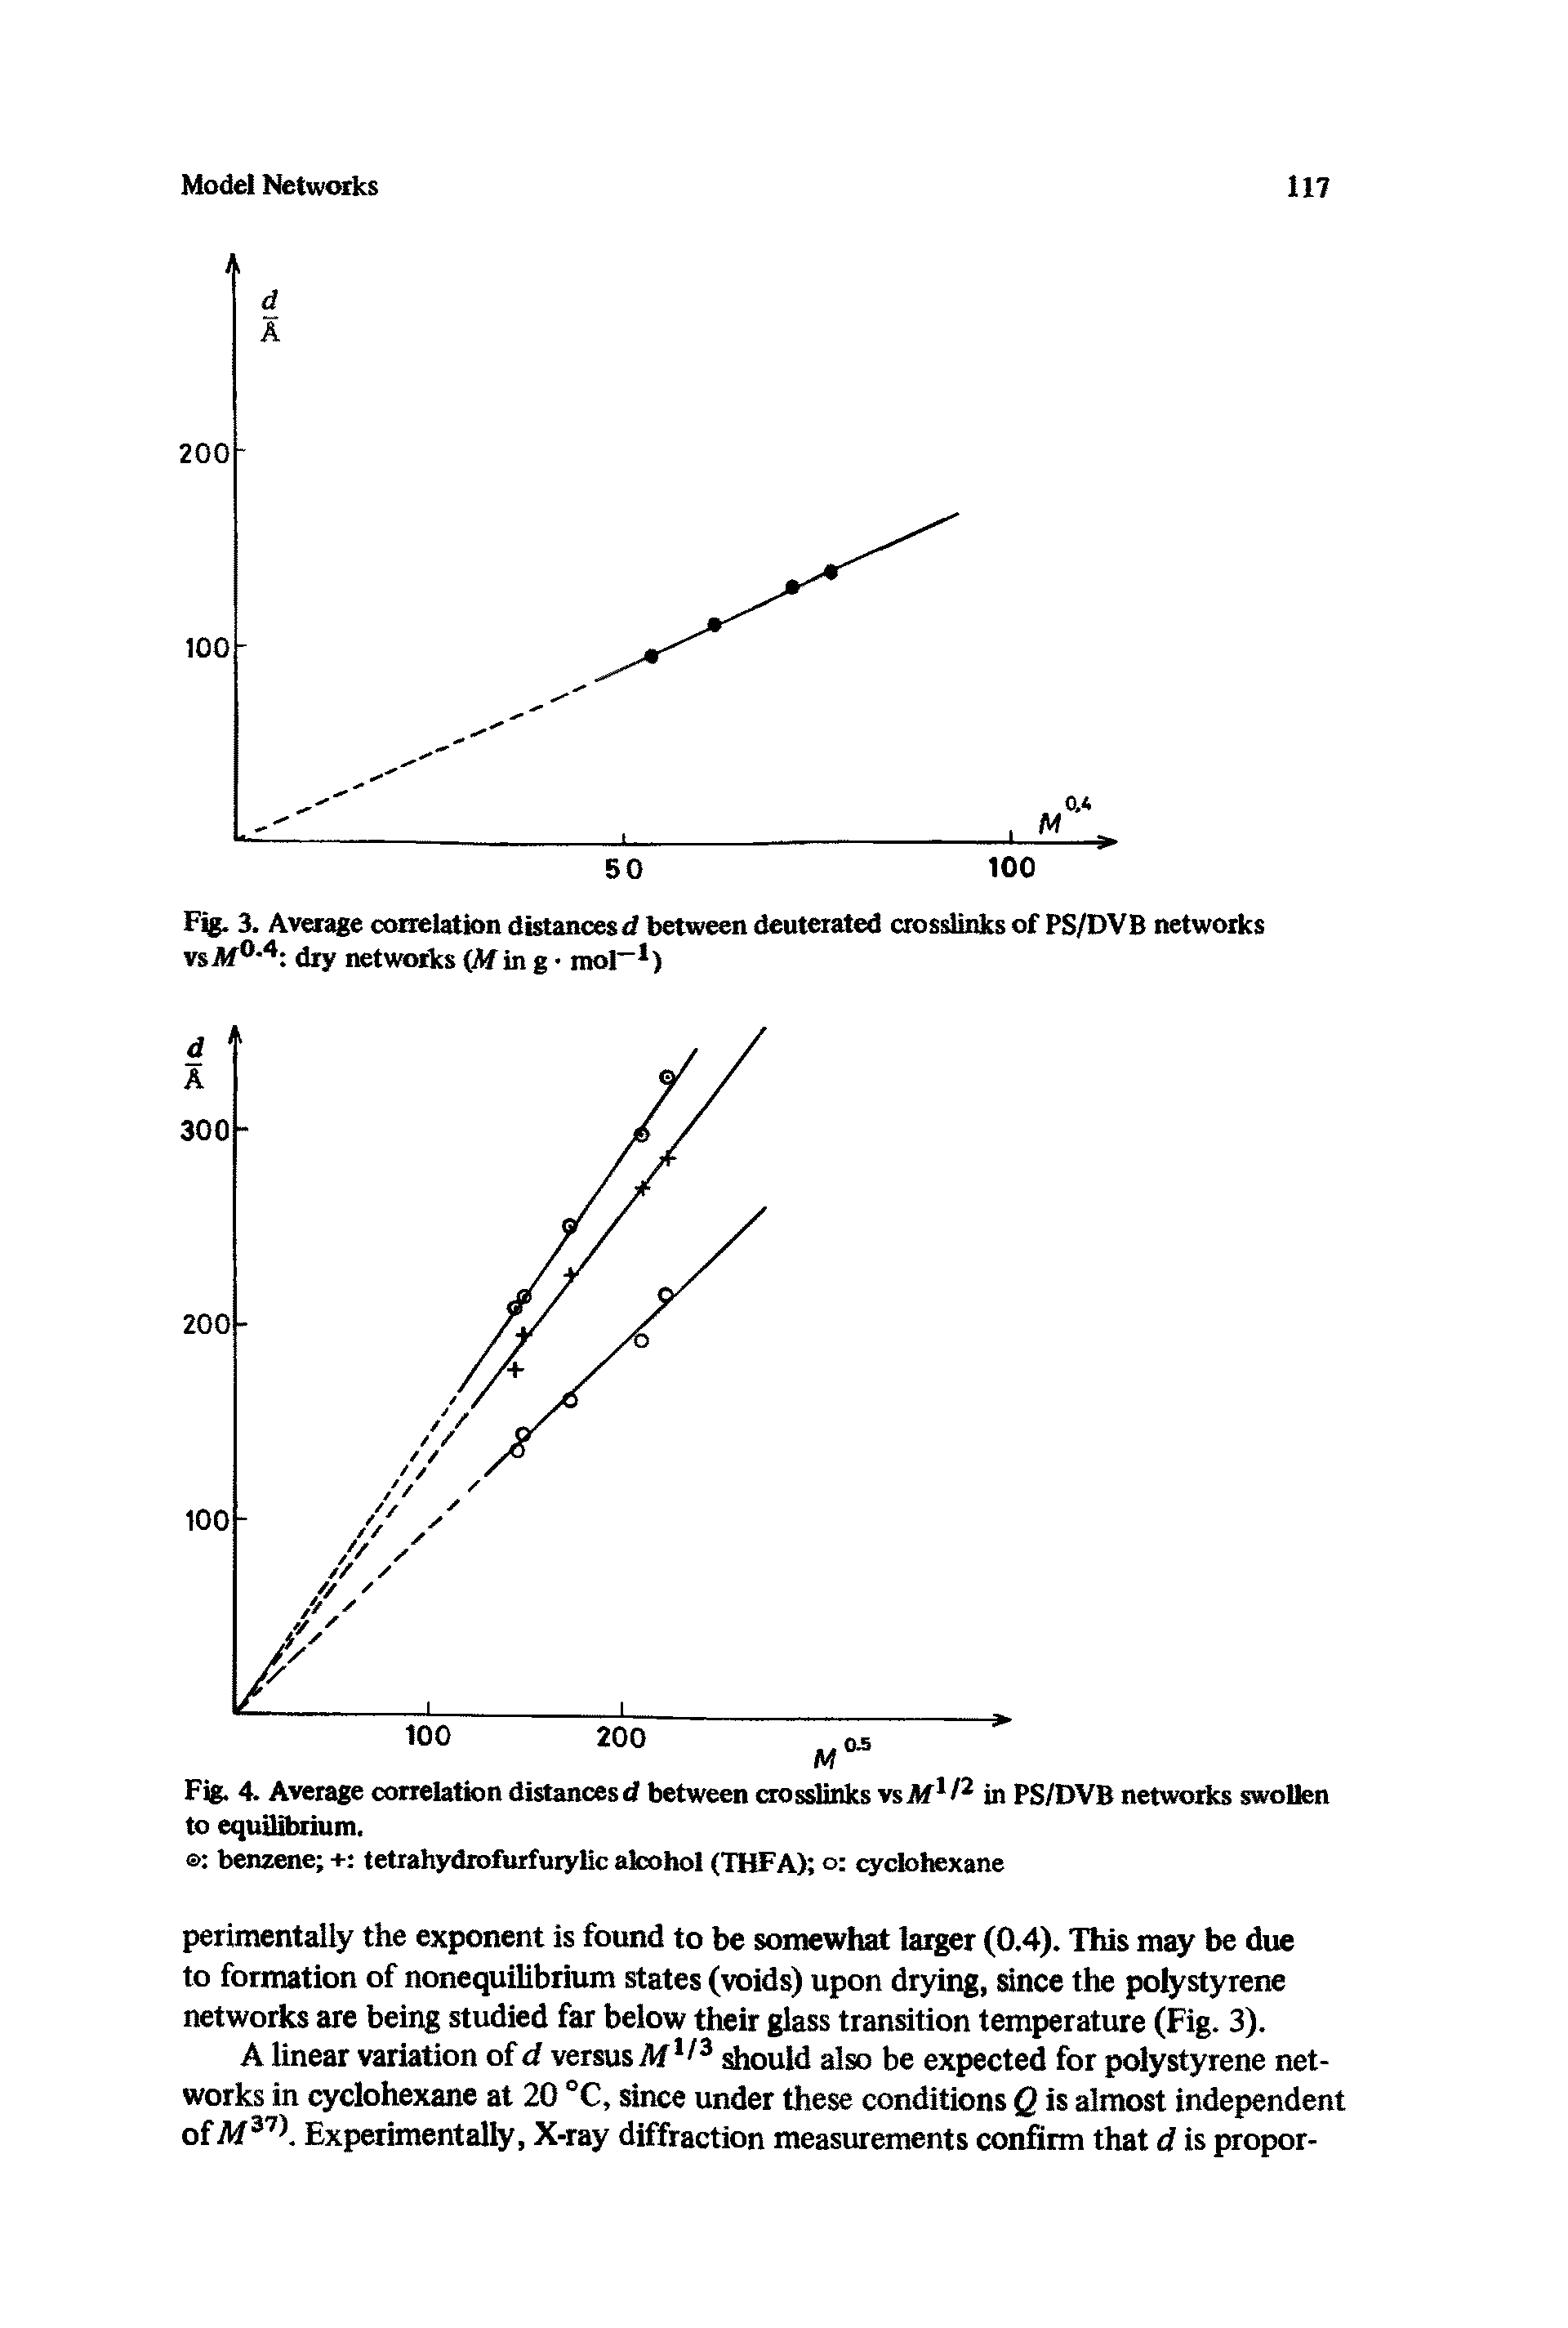 Fig. 4. Average correlation distancesd between crosslinks vsM1/2 in PS/DVB networks swollen to equilibrium.